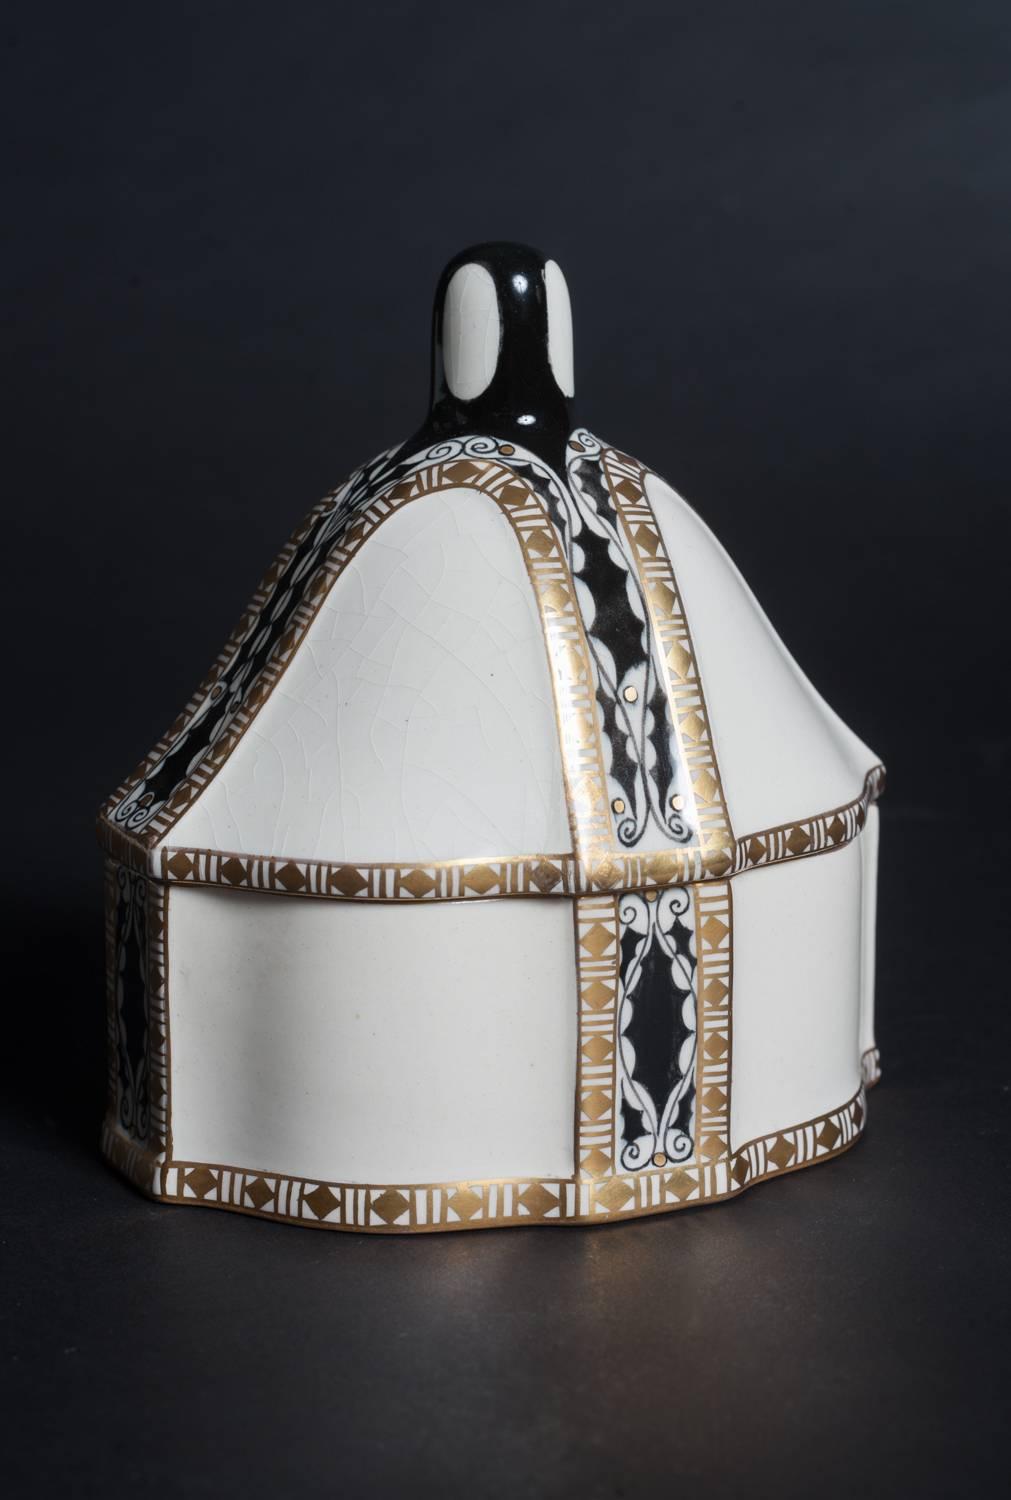 Serapis-Wahliss Jugendstil Lidded Porcelain Box - Art by Karl Klaus